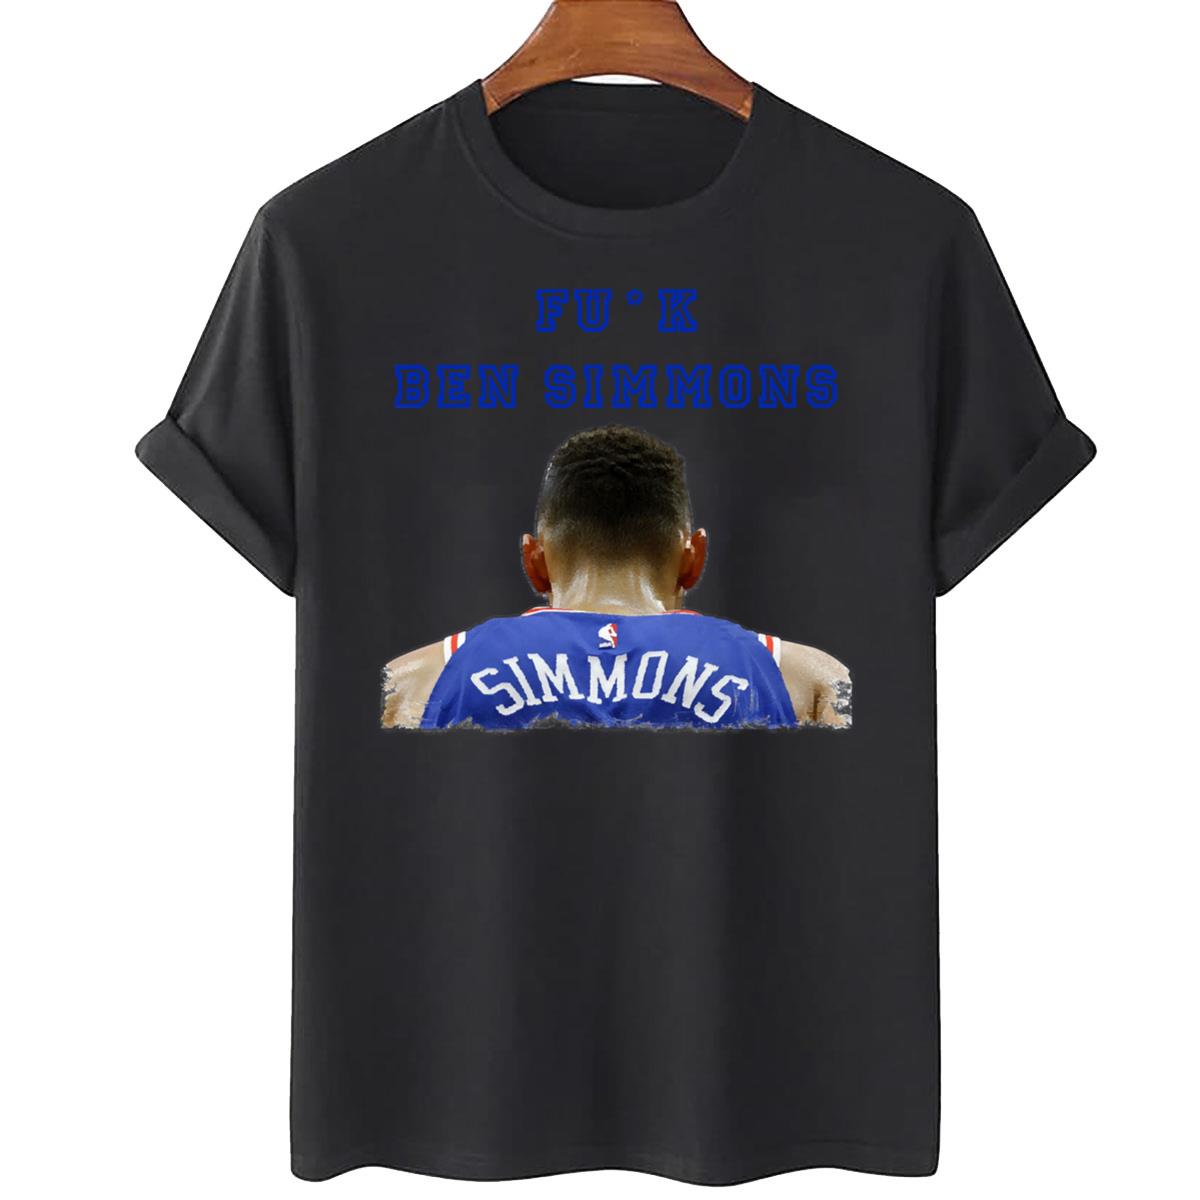 Fuk Ben Simmons T-Shirt, Ben Simmons Sucks T-Shirt